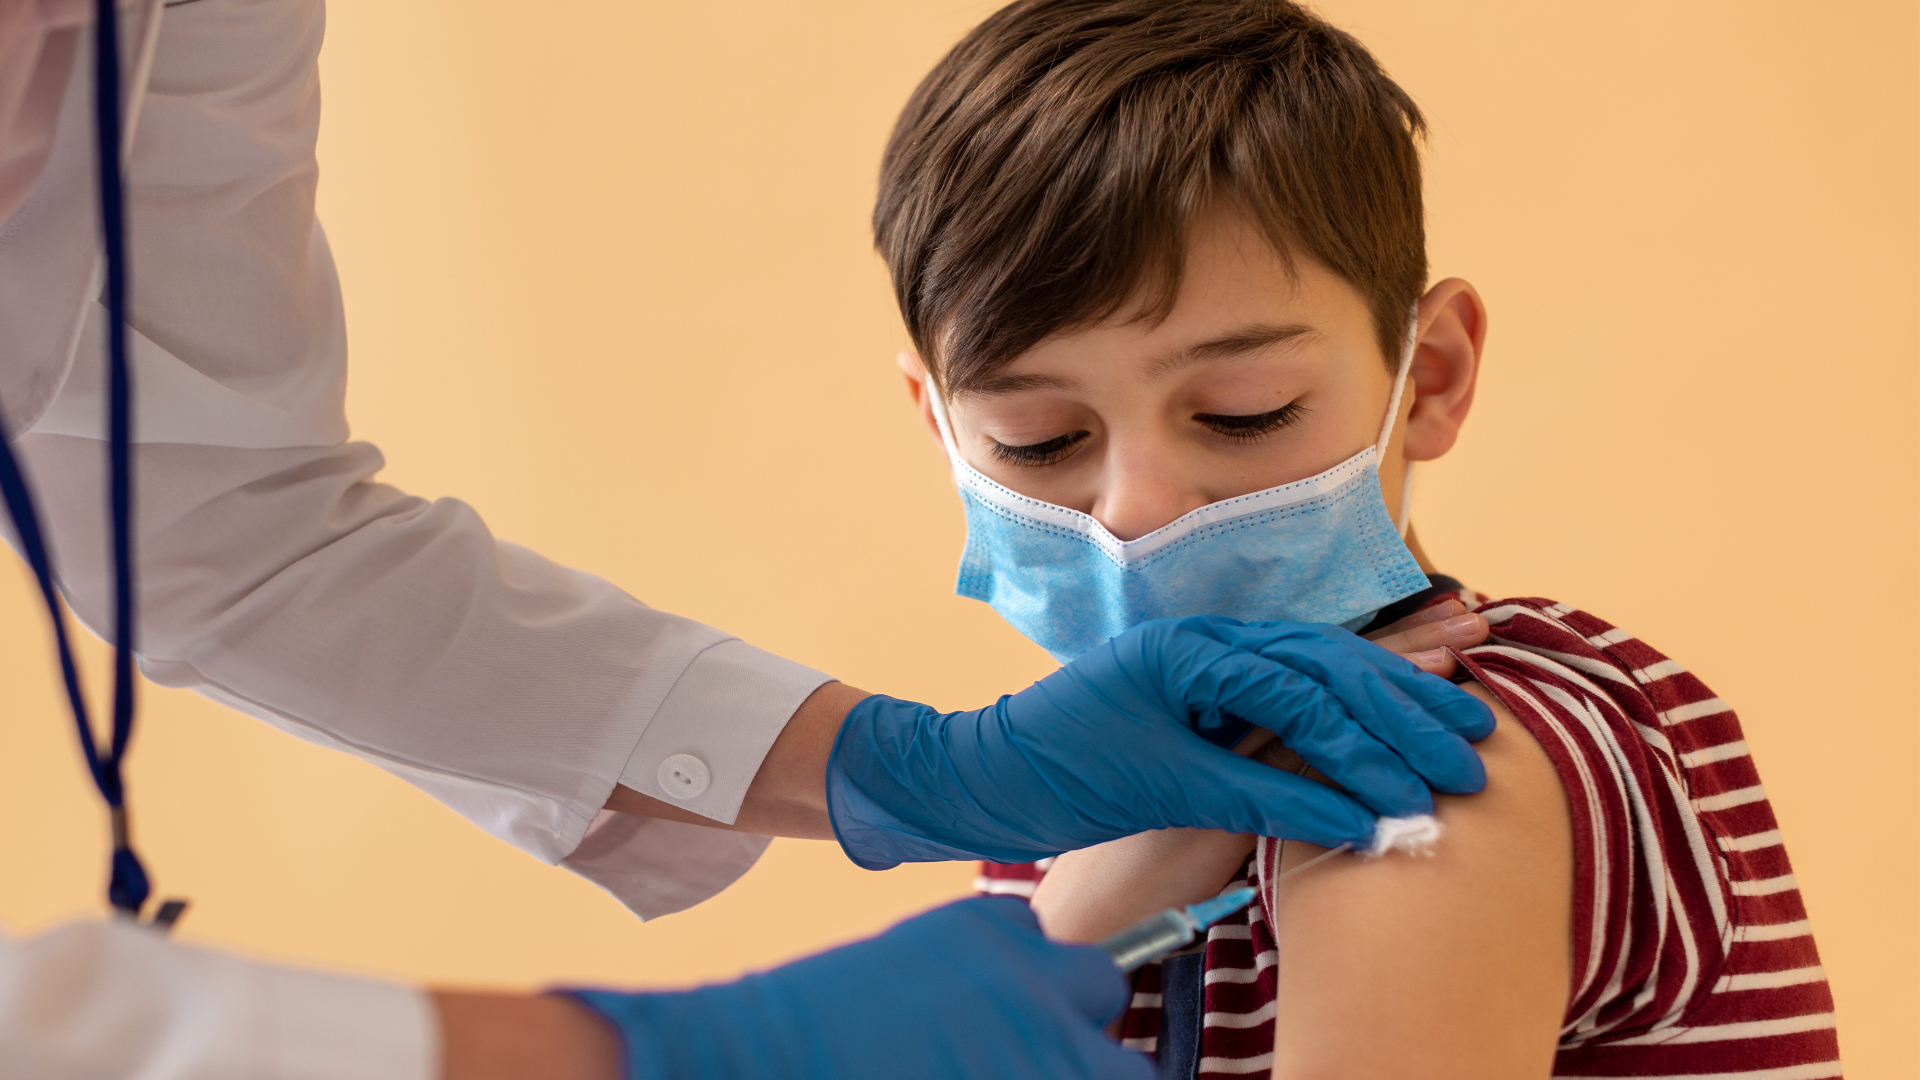 Foto de capa do artigo "Vacinação contra a Covid-19 em crianças: é seguro?"